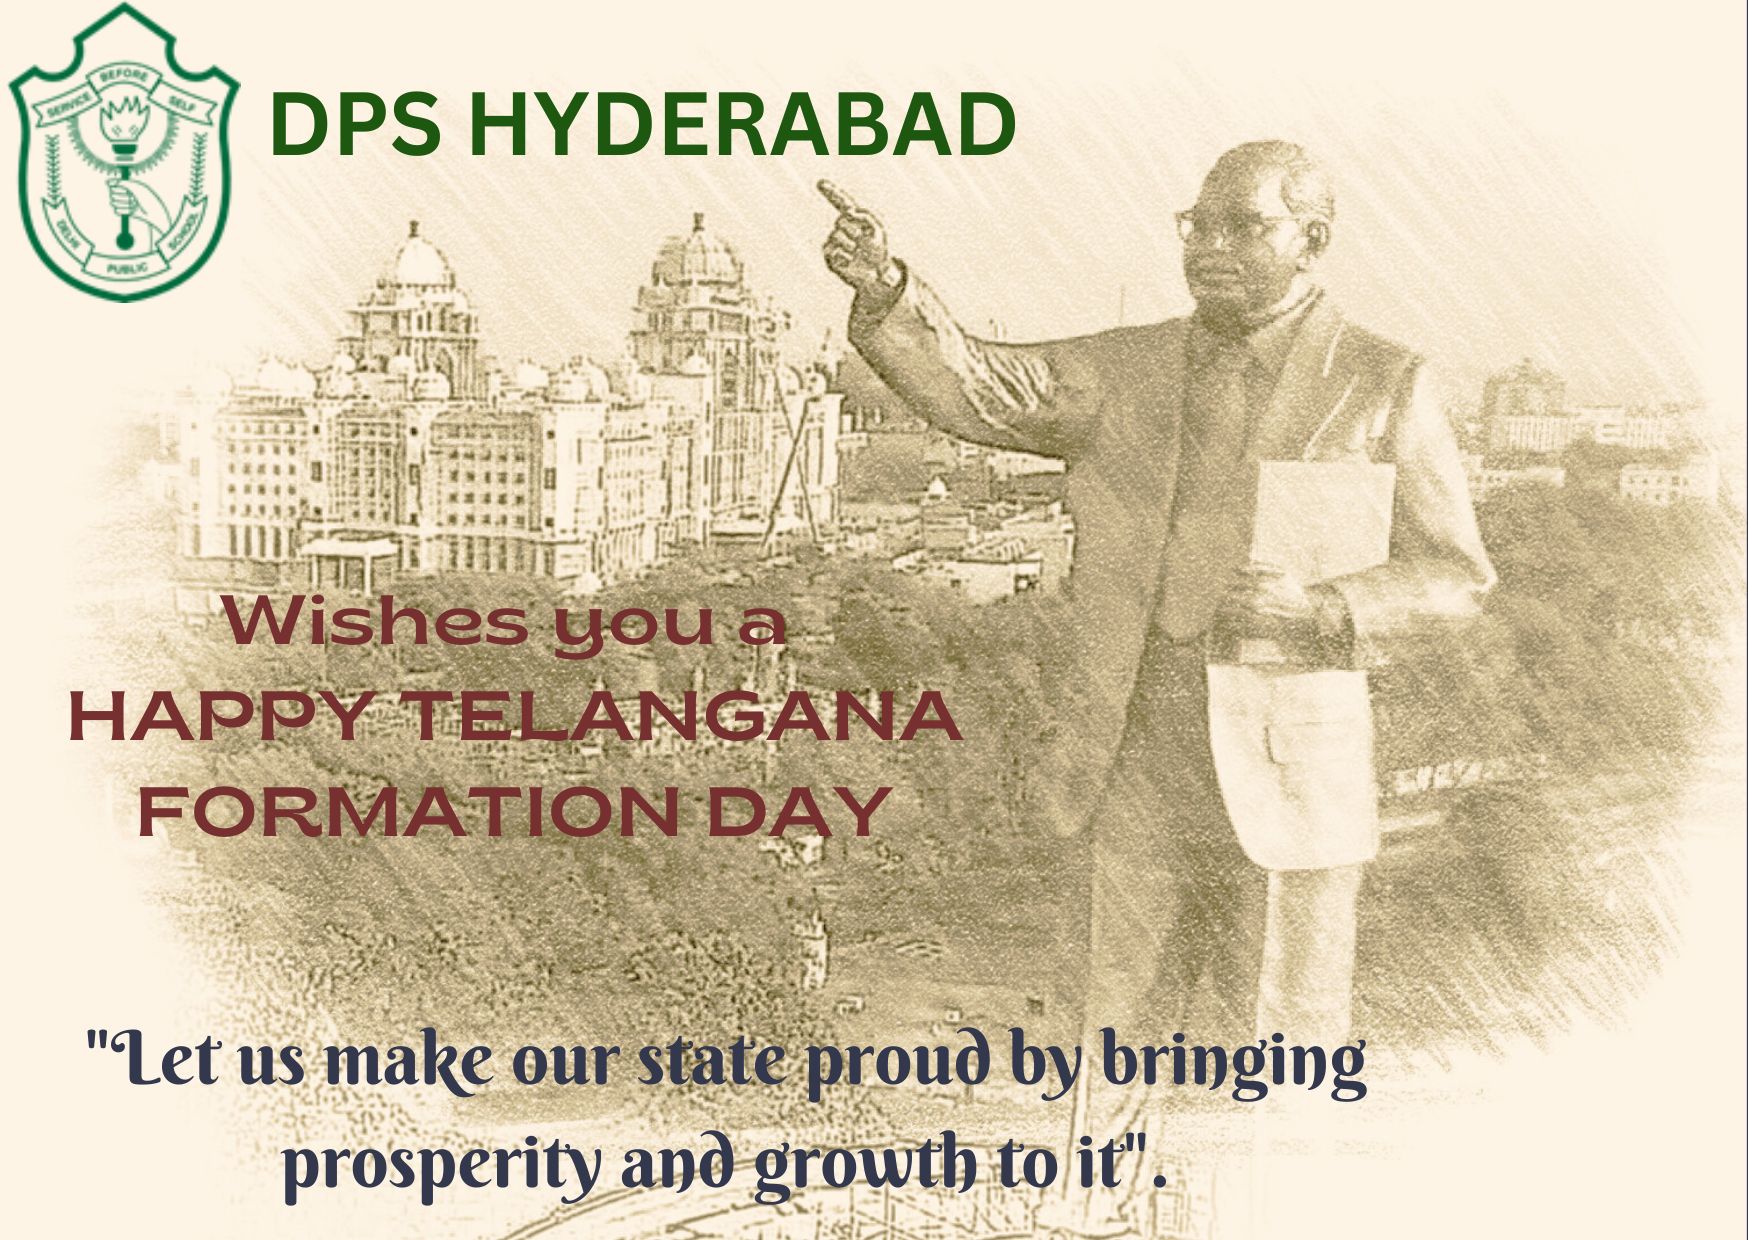 DPS Hyderabad